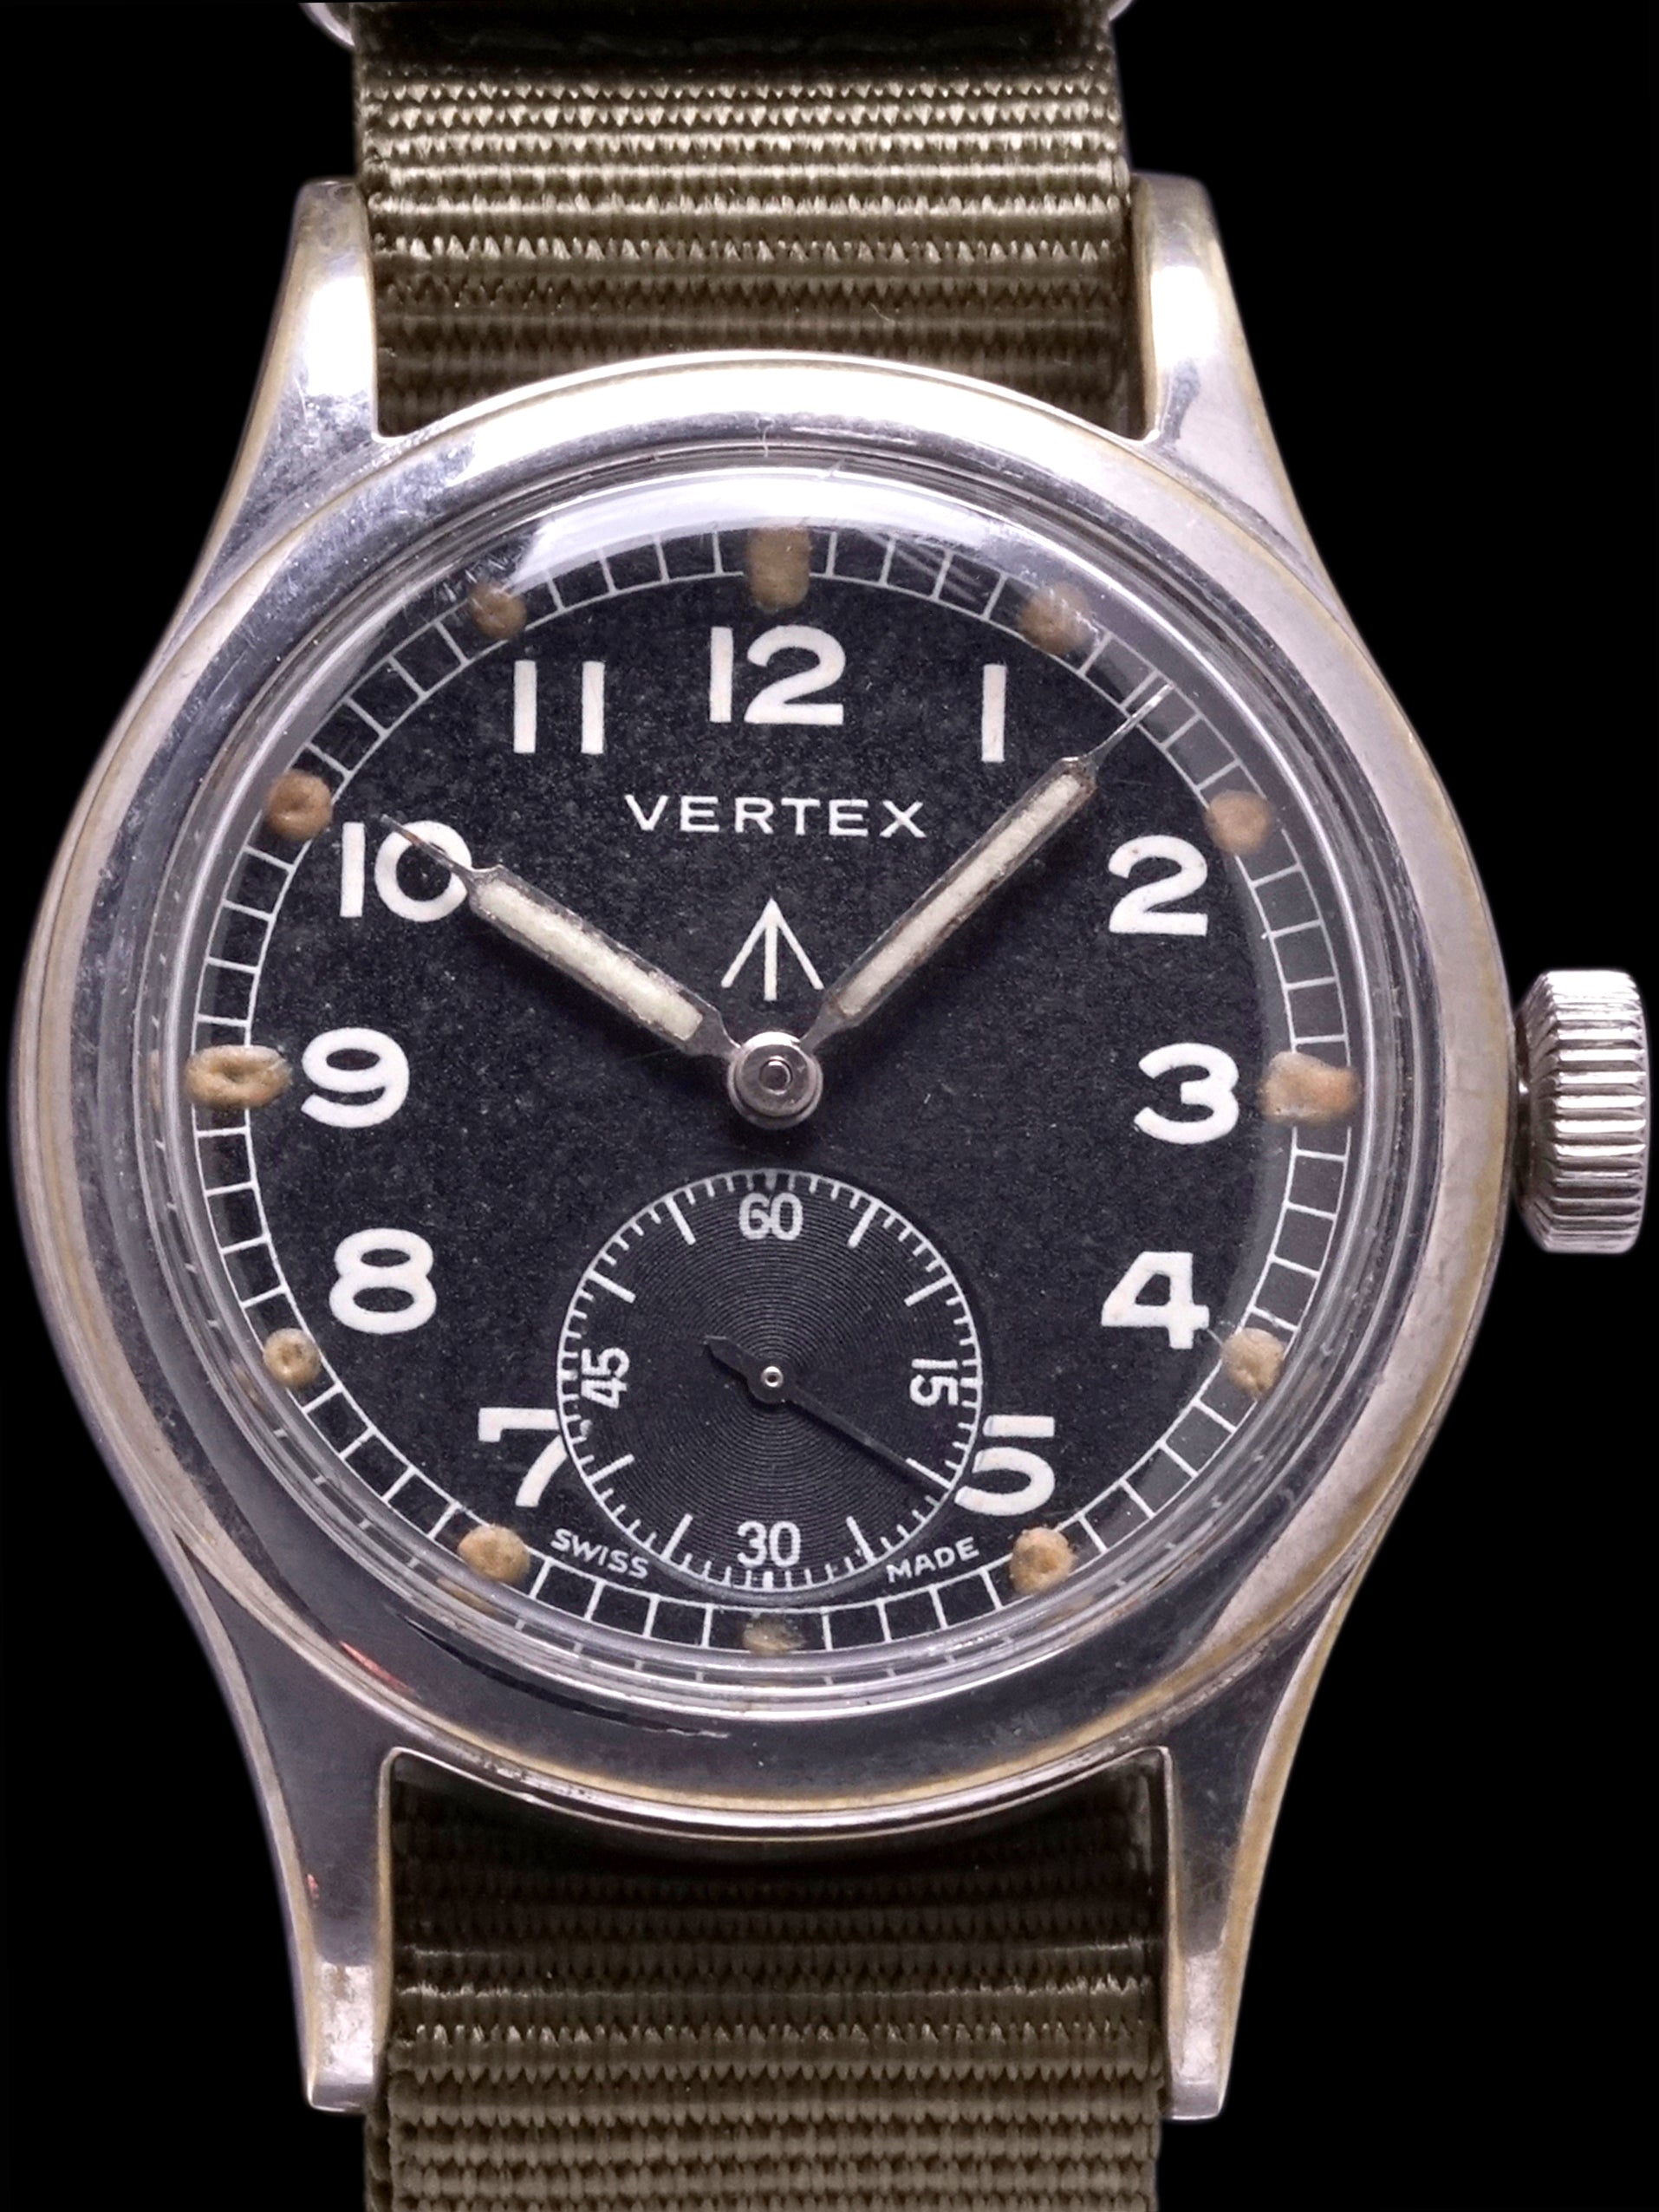 1940s Vertex "Dirty Dozen" Military Watch 59